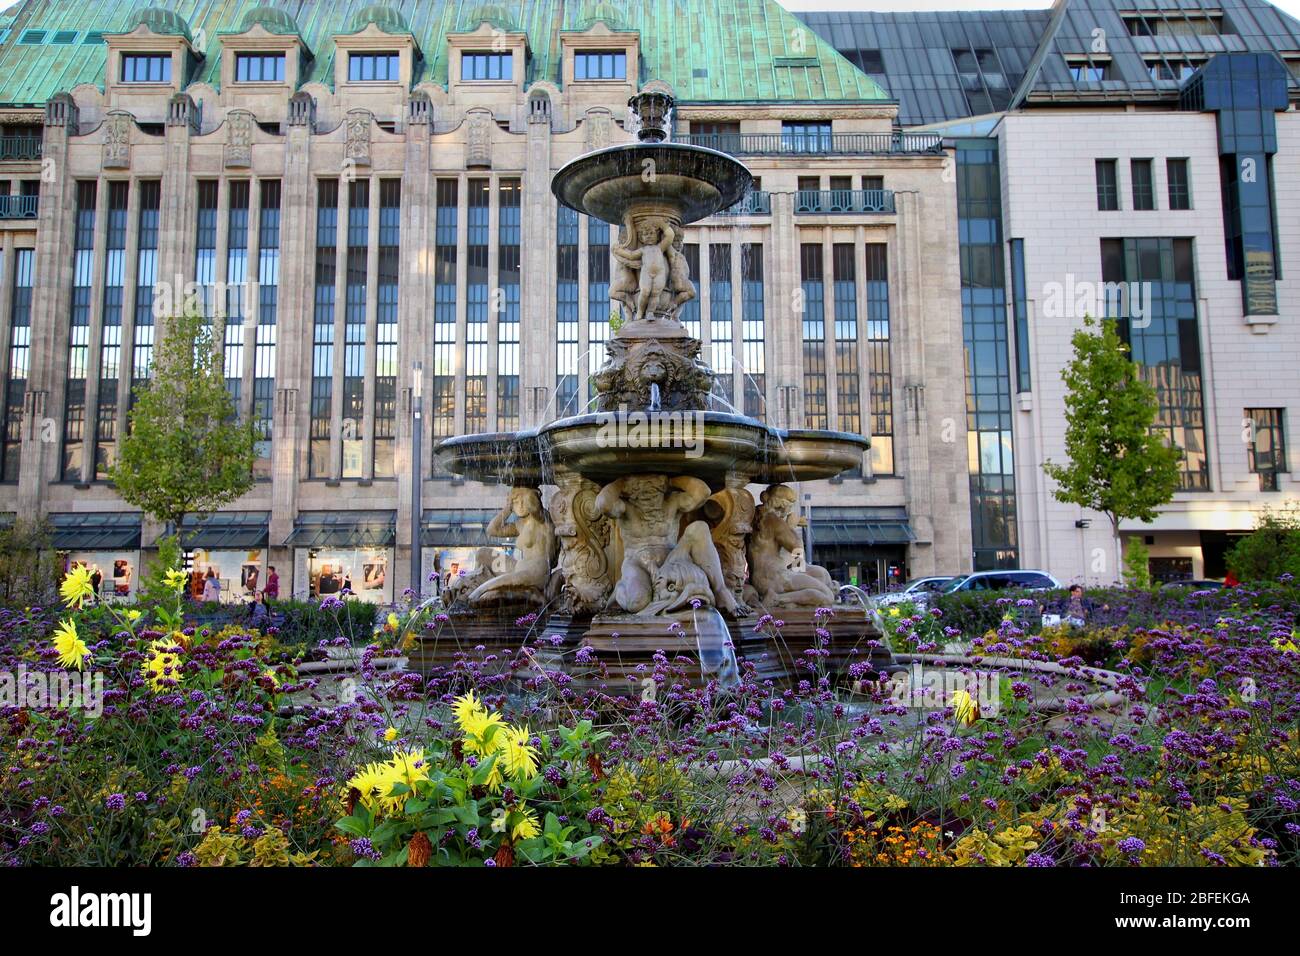 Le néo-baroque 'chalenbrunnen' (fontaine de bol) à Corneliusplatz, érigé en 1882. Le grand magasin traditionnel 'Kaufhof' est visible en arrière-plan. Banque D'Images